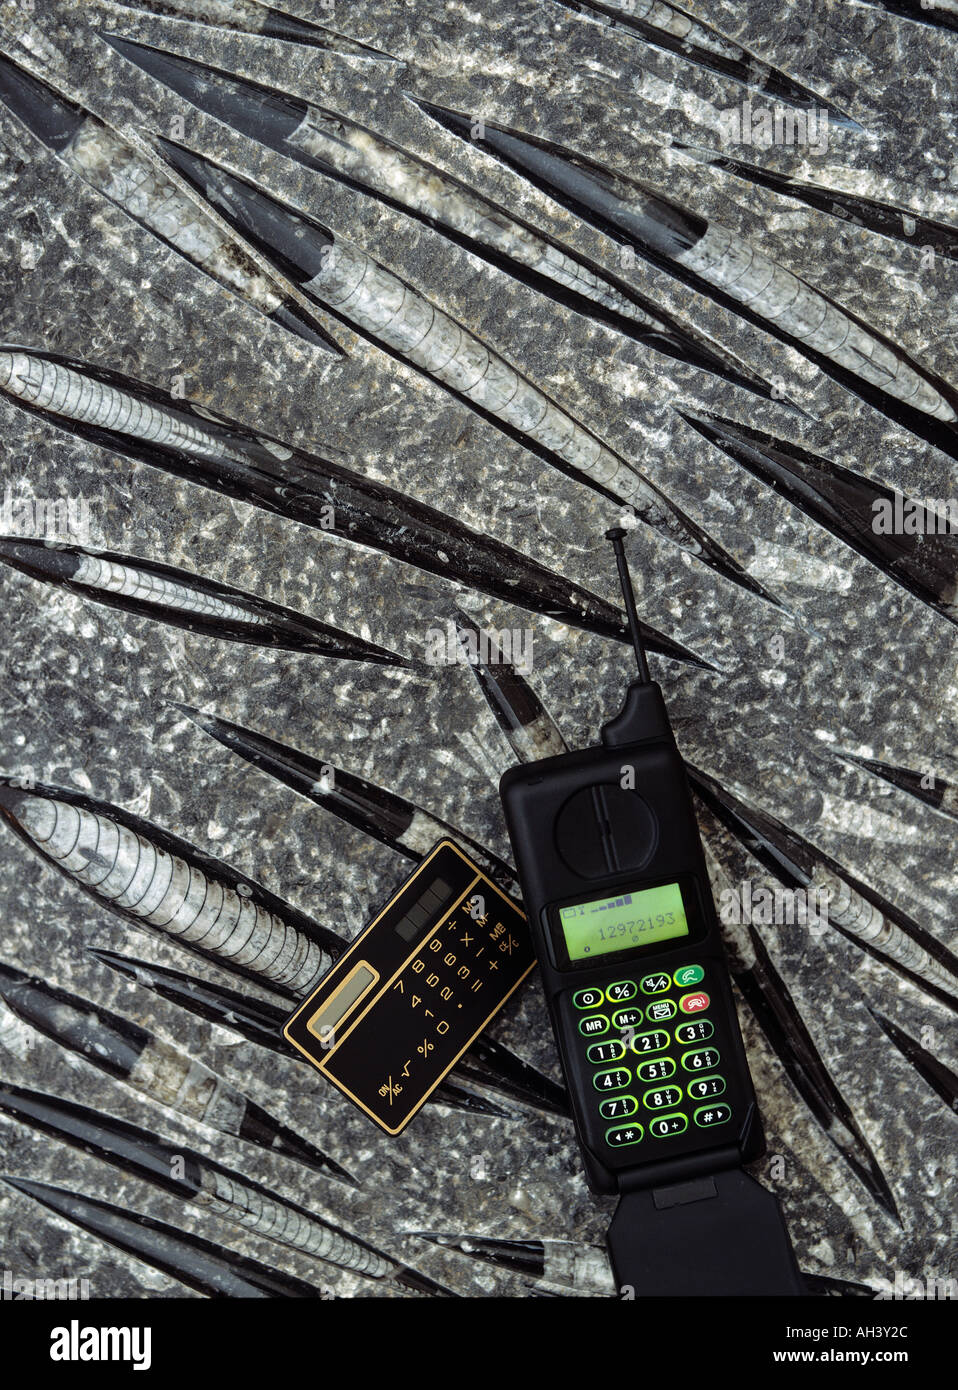 Calculatrice et d'un téléphone cellulaire sur une dalle de fossiles de mollusques Orthoceras 350 à 500 millions d'années Banque D'Images